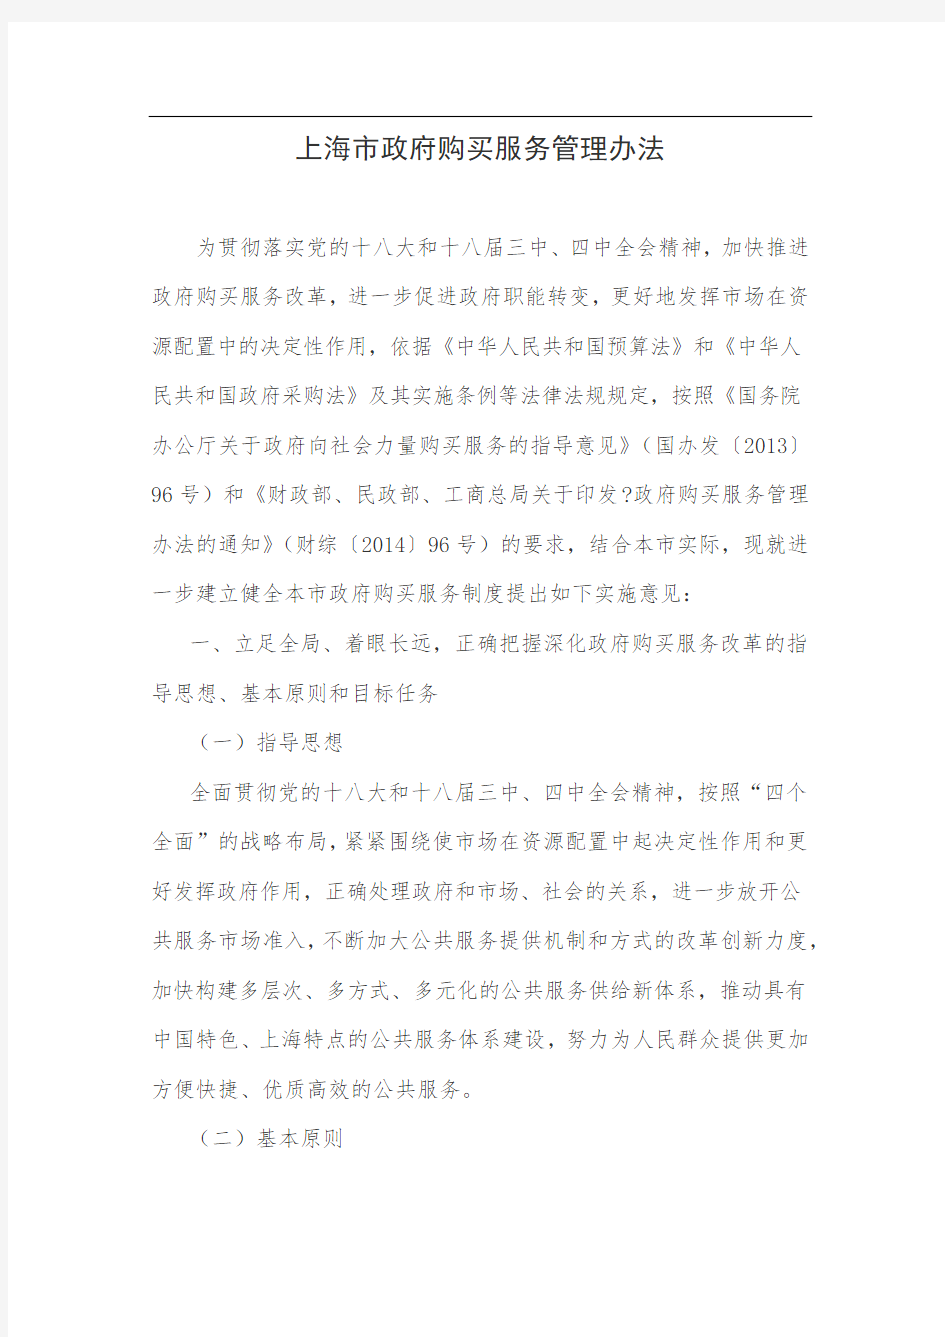 上海市政府购买服务管理办法